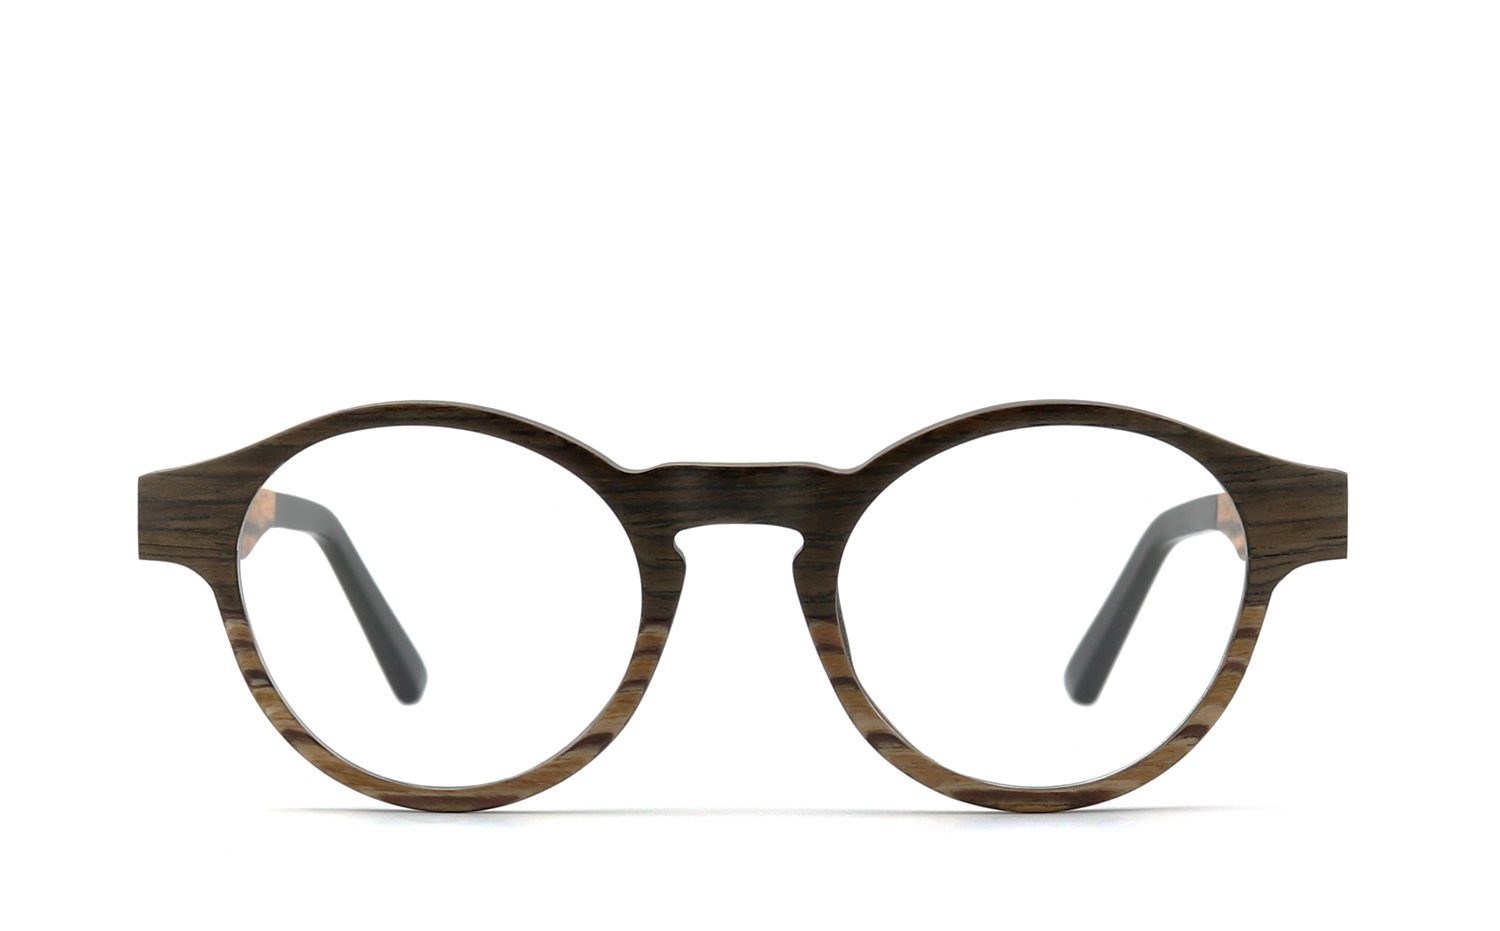 Brille Flex-Scharnieren Bügel mit COR009 COR Holzbrille,